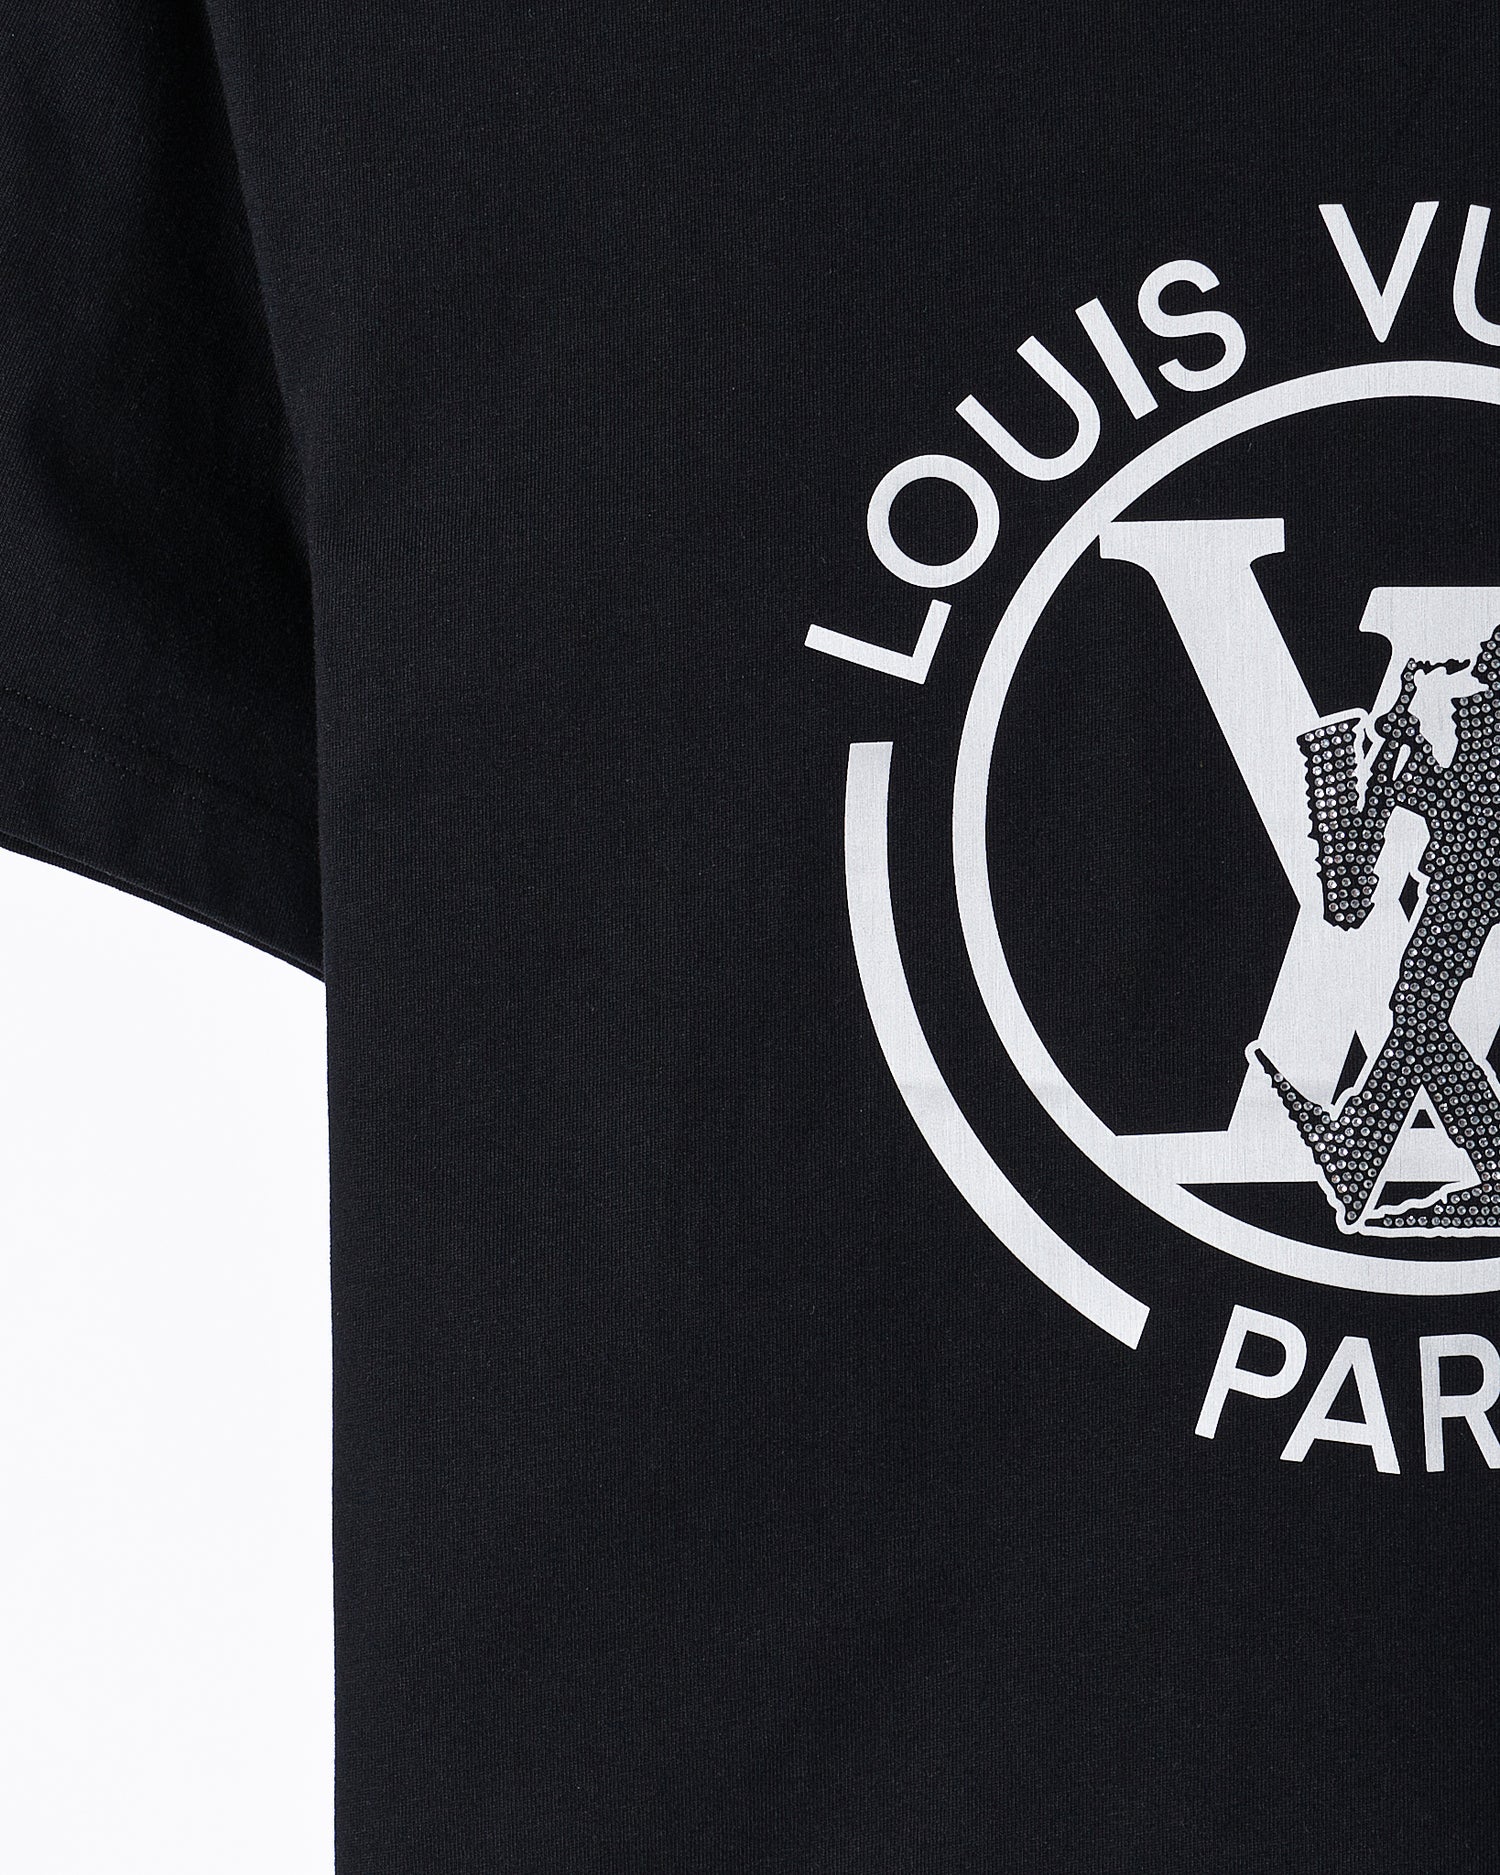 LOUIS VUITTON rhinestone t-shirt  Vuitton, Louis vuitton, Mens